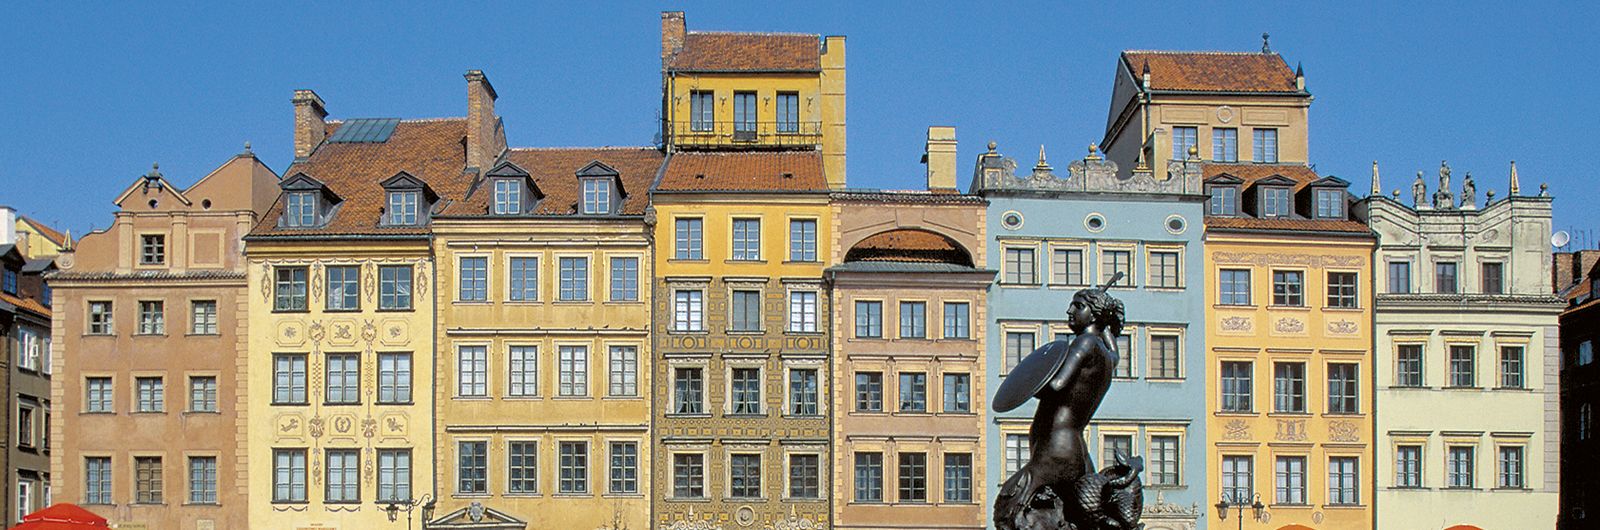 edificio en gdansk